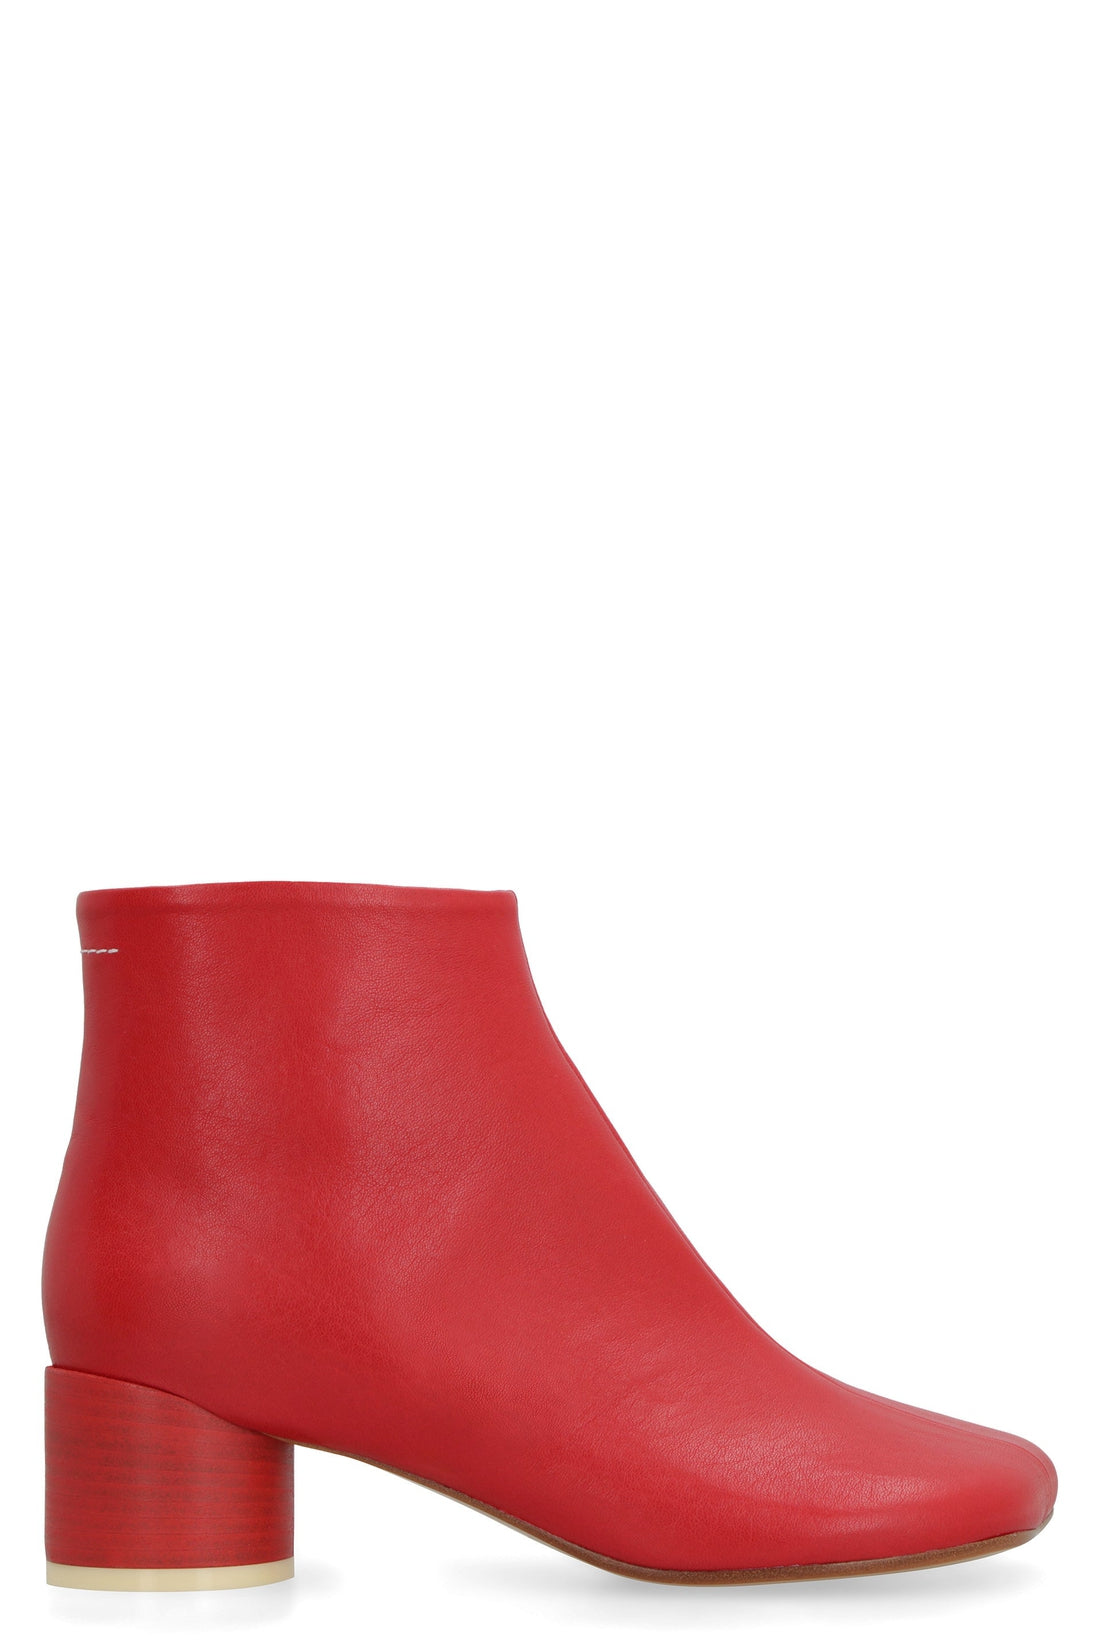 MM6 Maison Margiela-OUTLET-SALE-Tabi leather ankle boots-ARCHIVIST